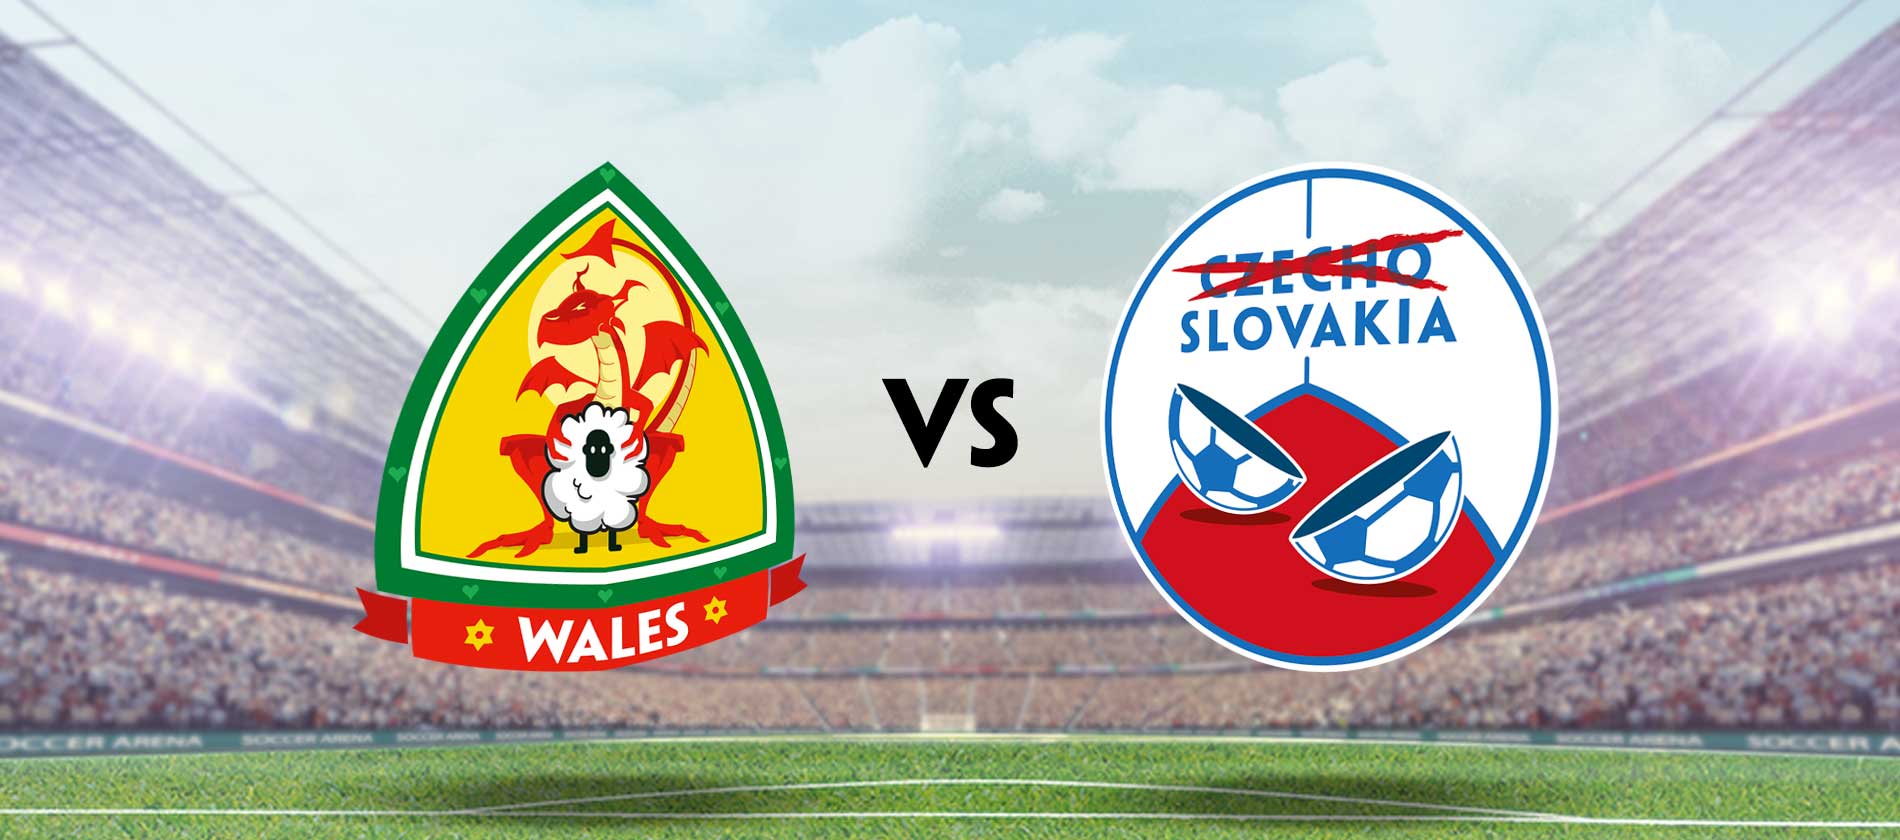 Wales vs Slovakia